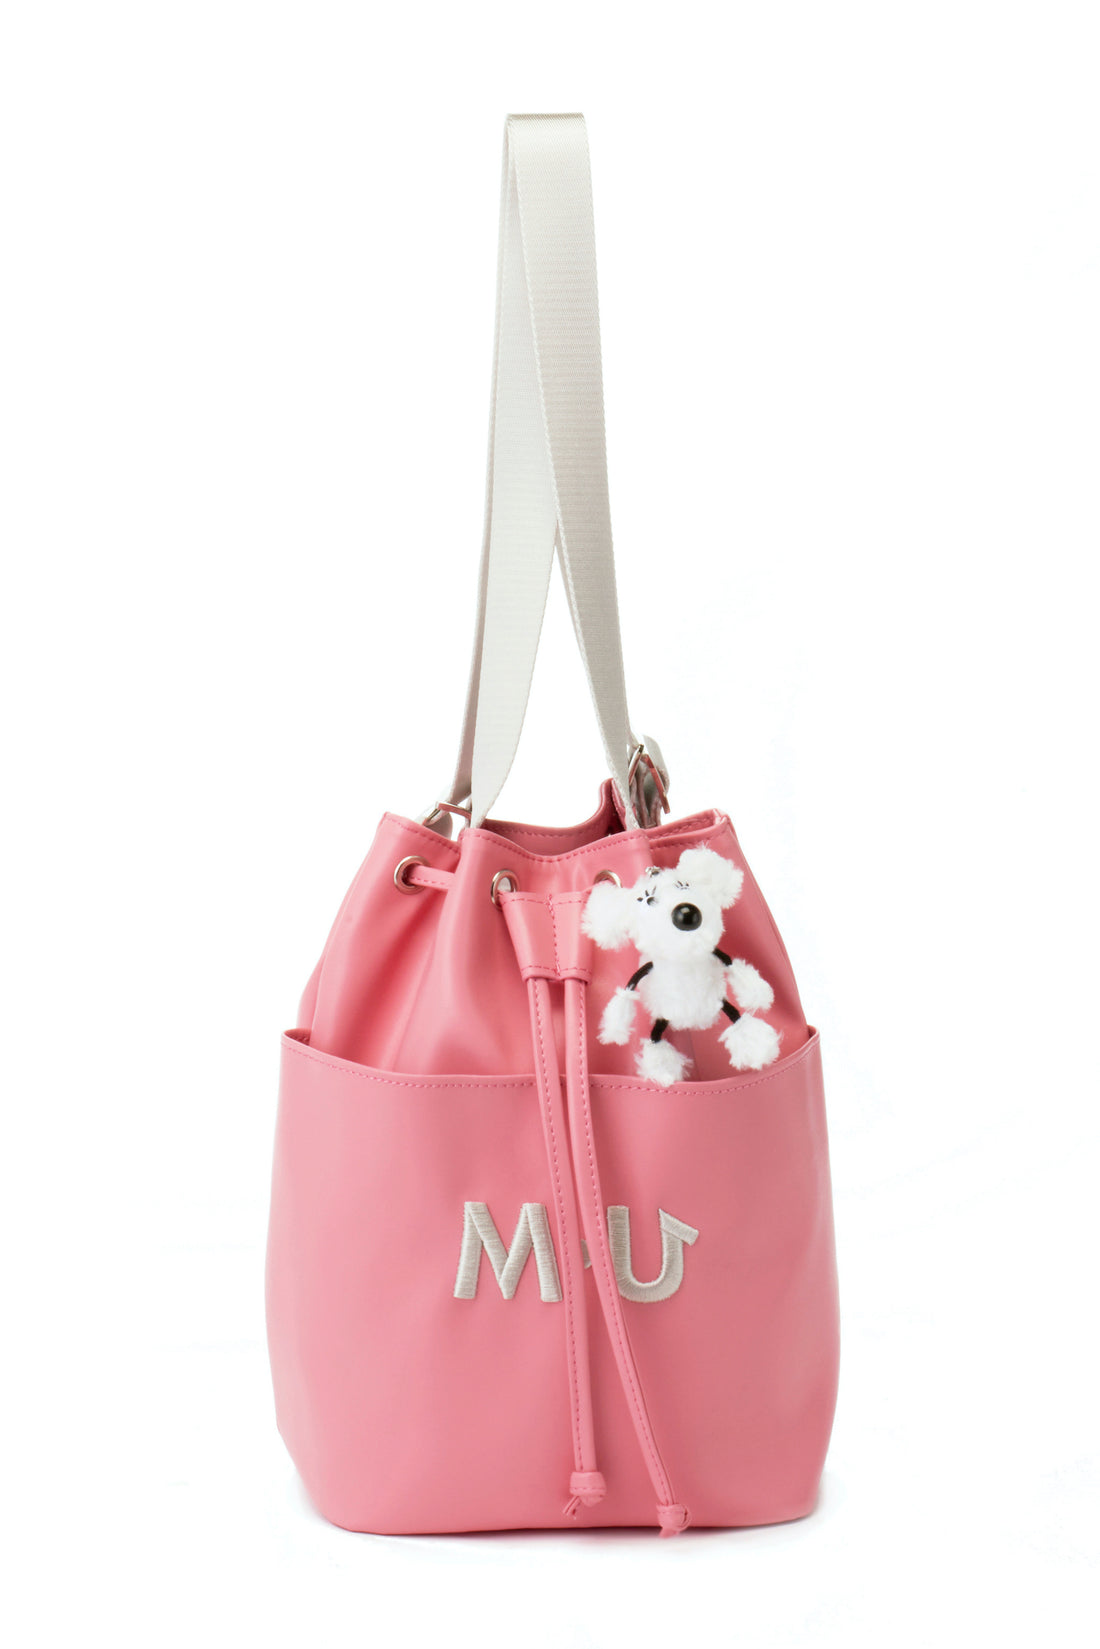 SHUSHU mini backpack with charm (703J1026)